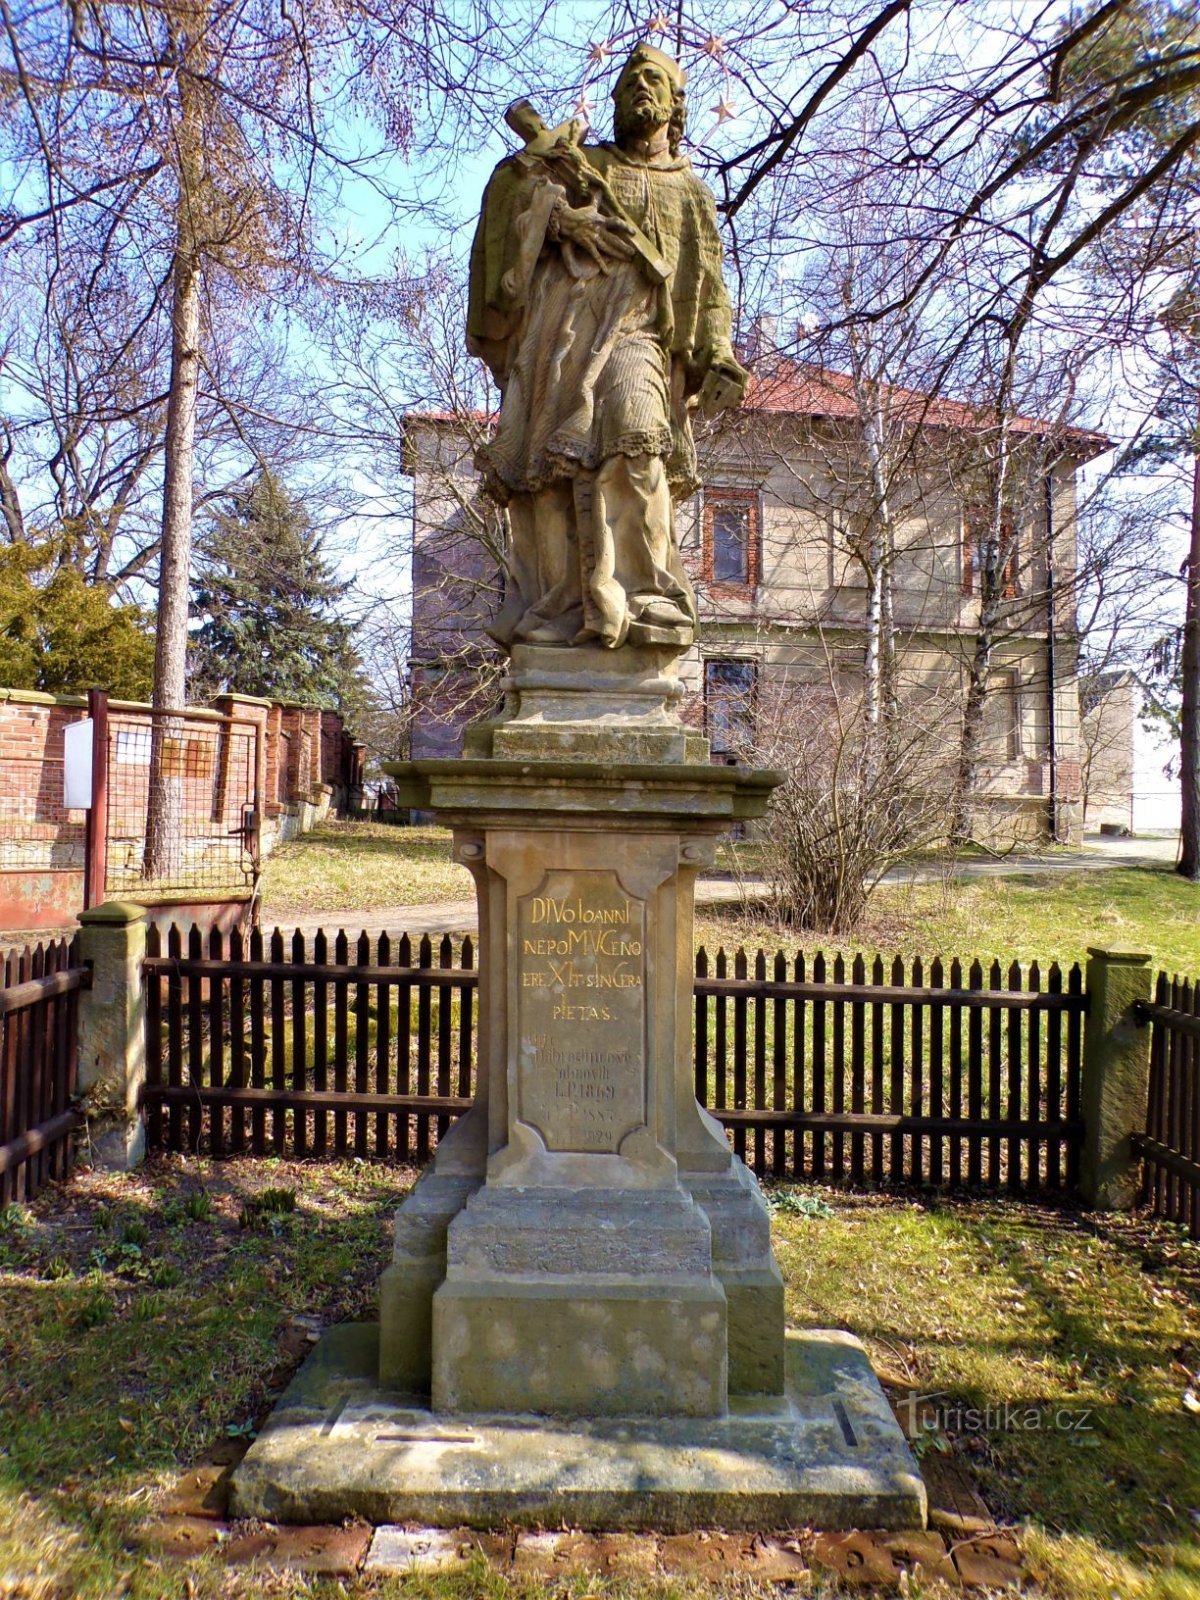 Άγαλμα του Αγ. John of Nepomuck (Černilov, 25.3.2021/XNUMX/XNUMX)